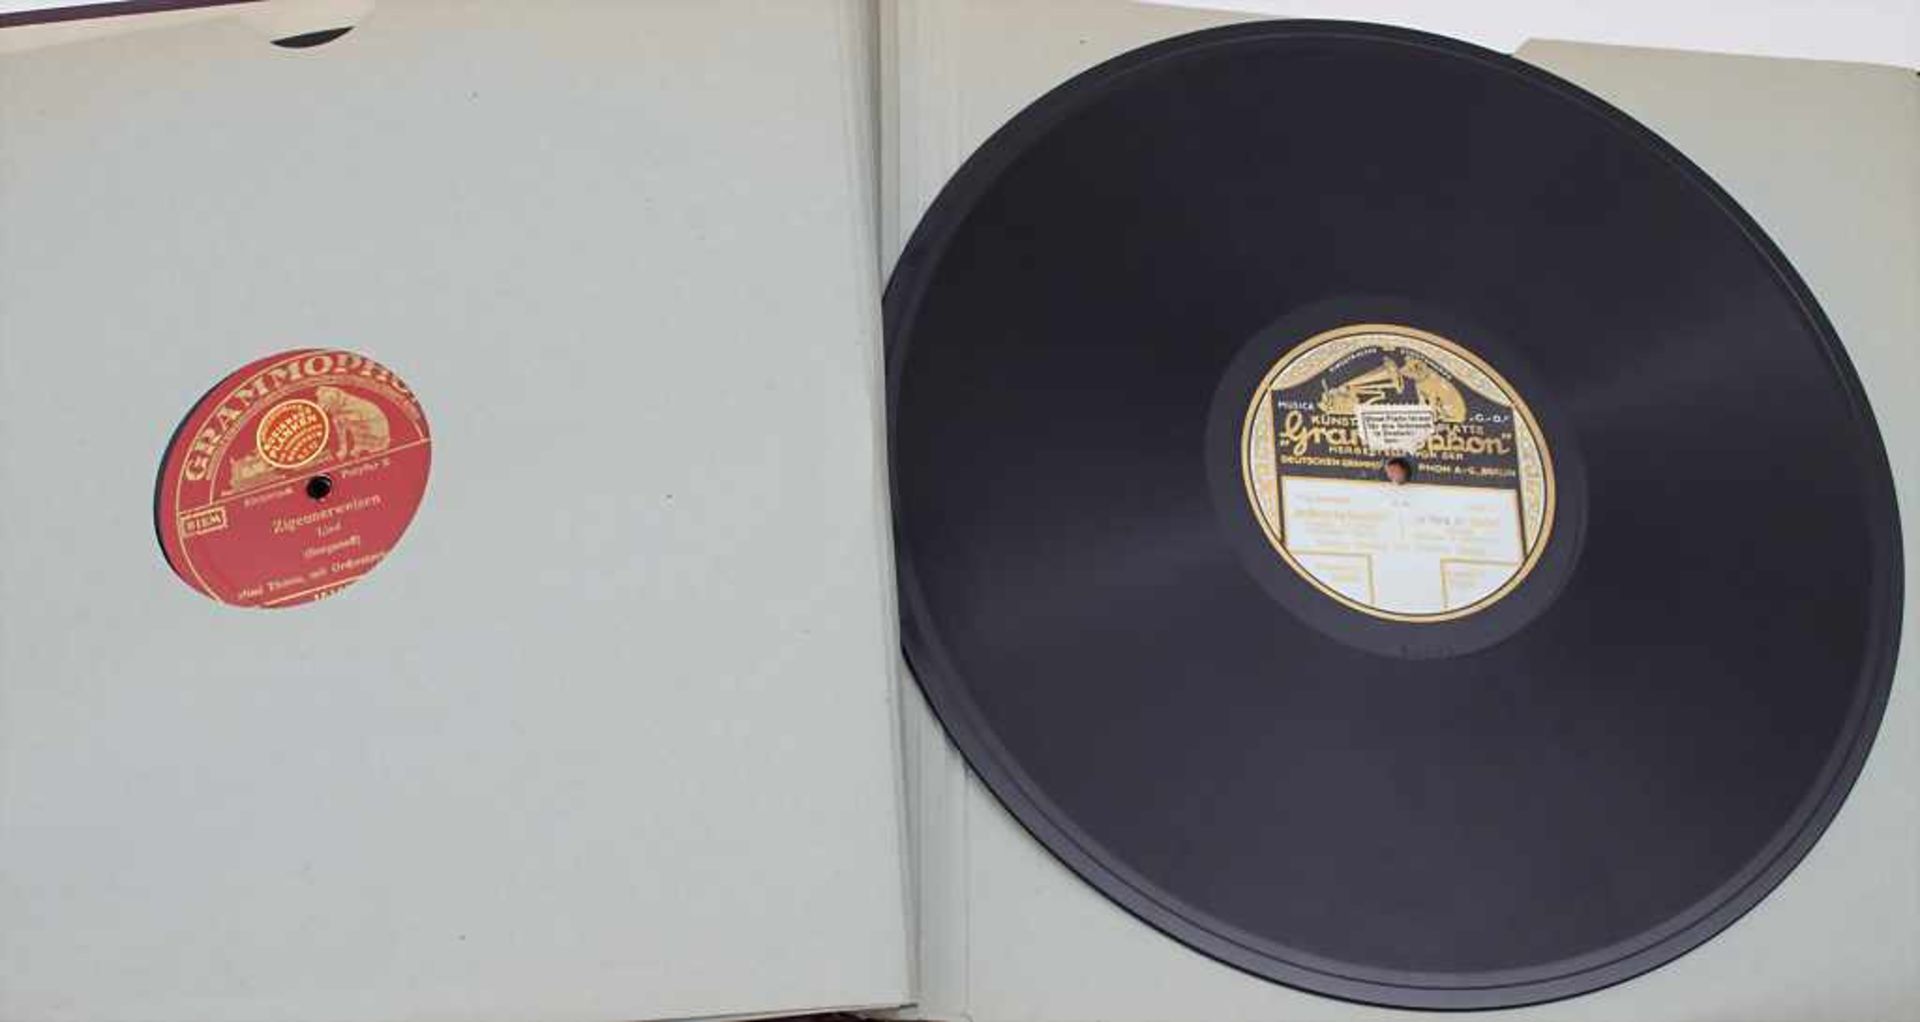 4 Sammelalben Schellackplatten / A collection of schellack records Bestehend aus 45 Platten der - Bild 5 aus 5